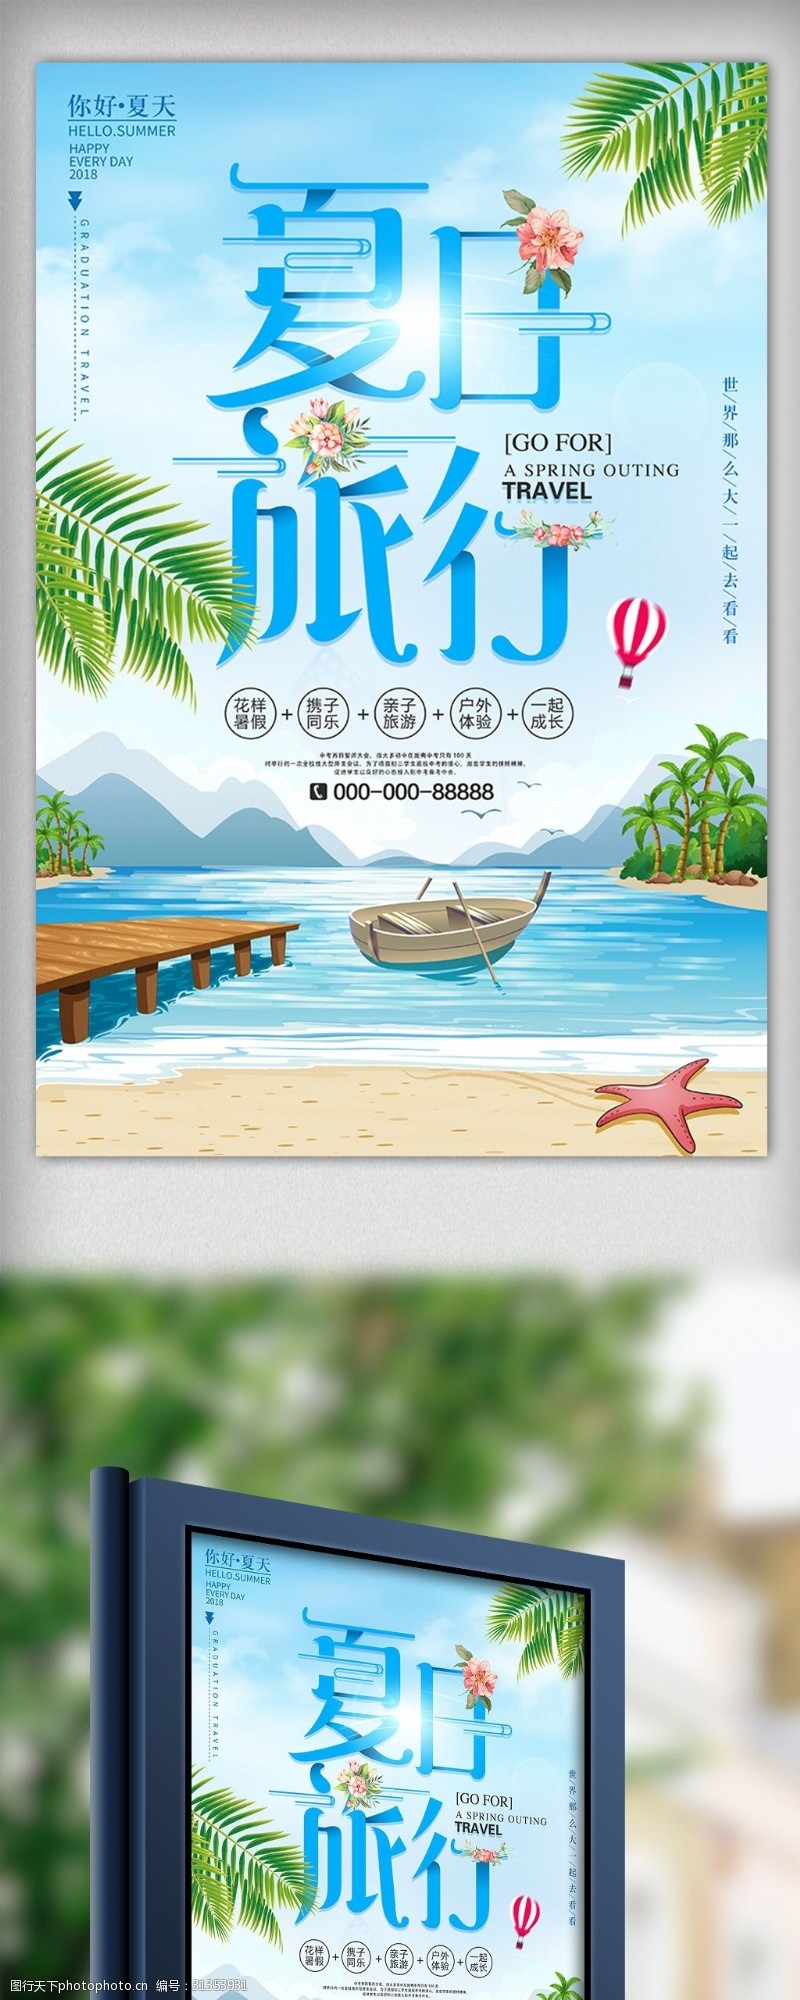 初夏模板下载夏天去旅行初夏海边沙滩旅游海报